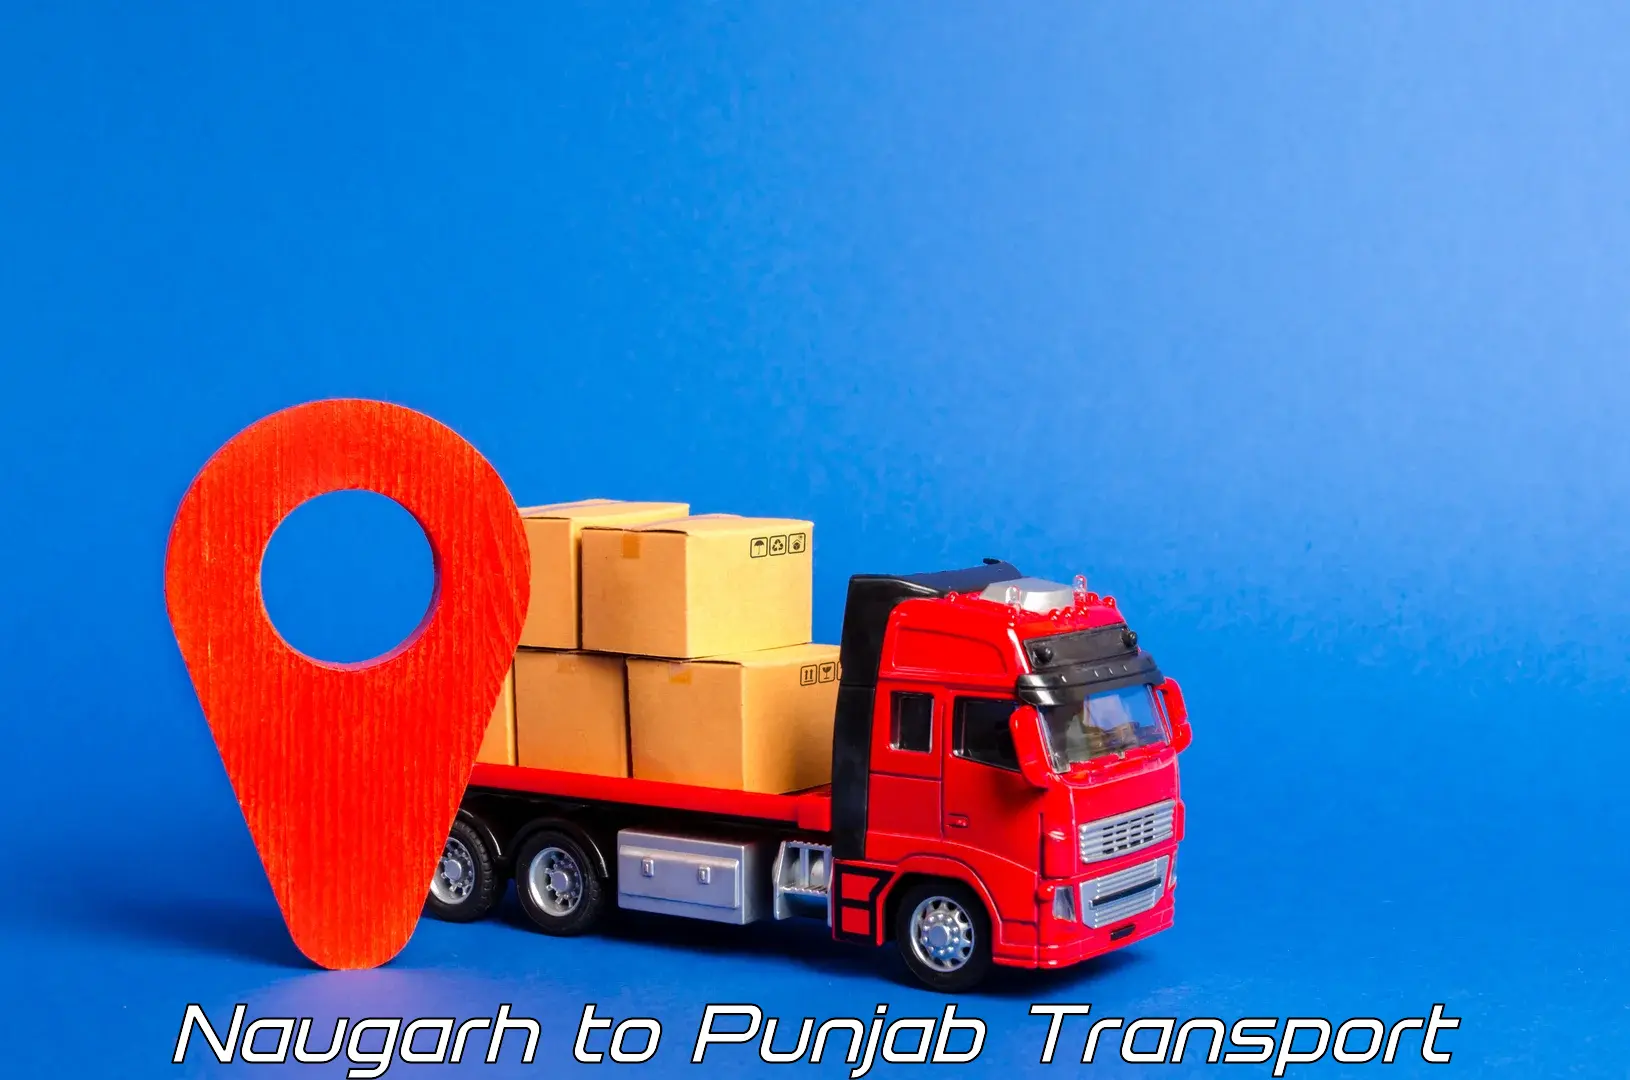 Cargo transportation services Naugarh to Fatehgarh Sahib